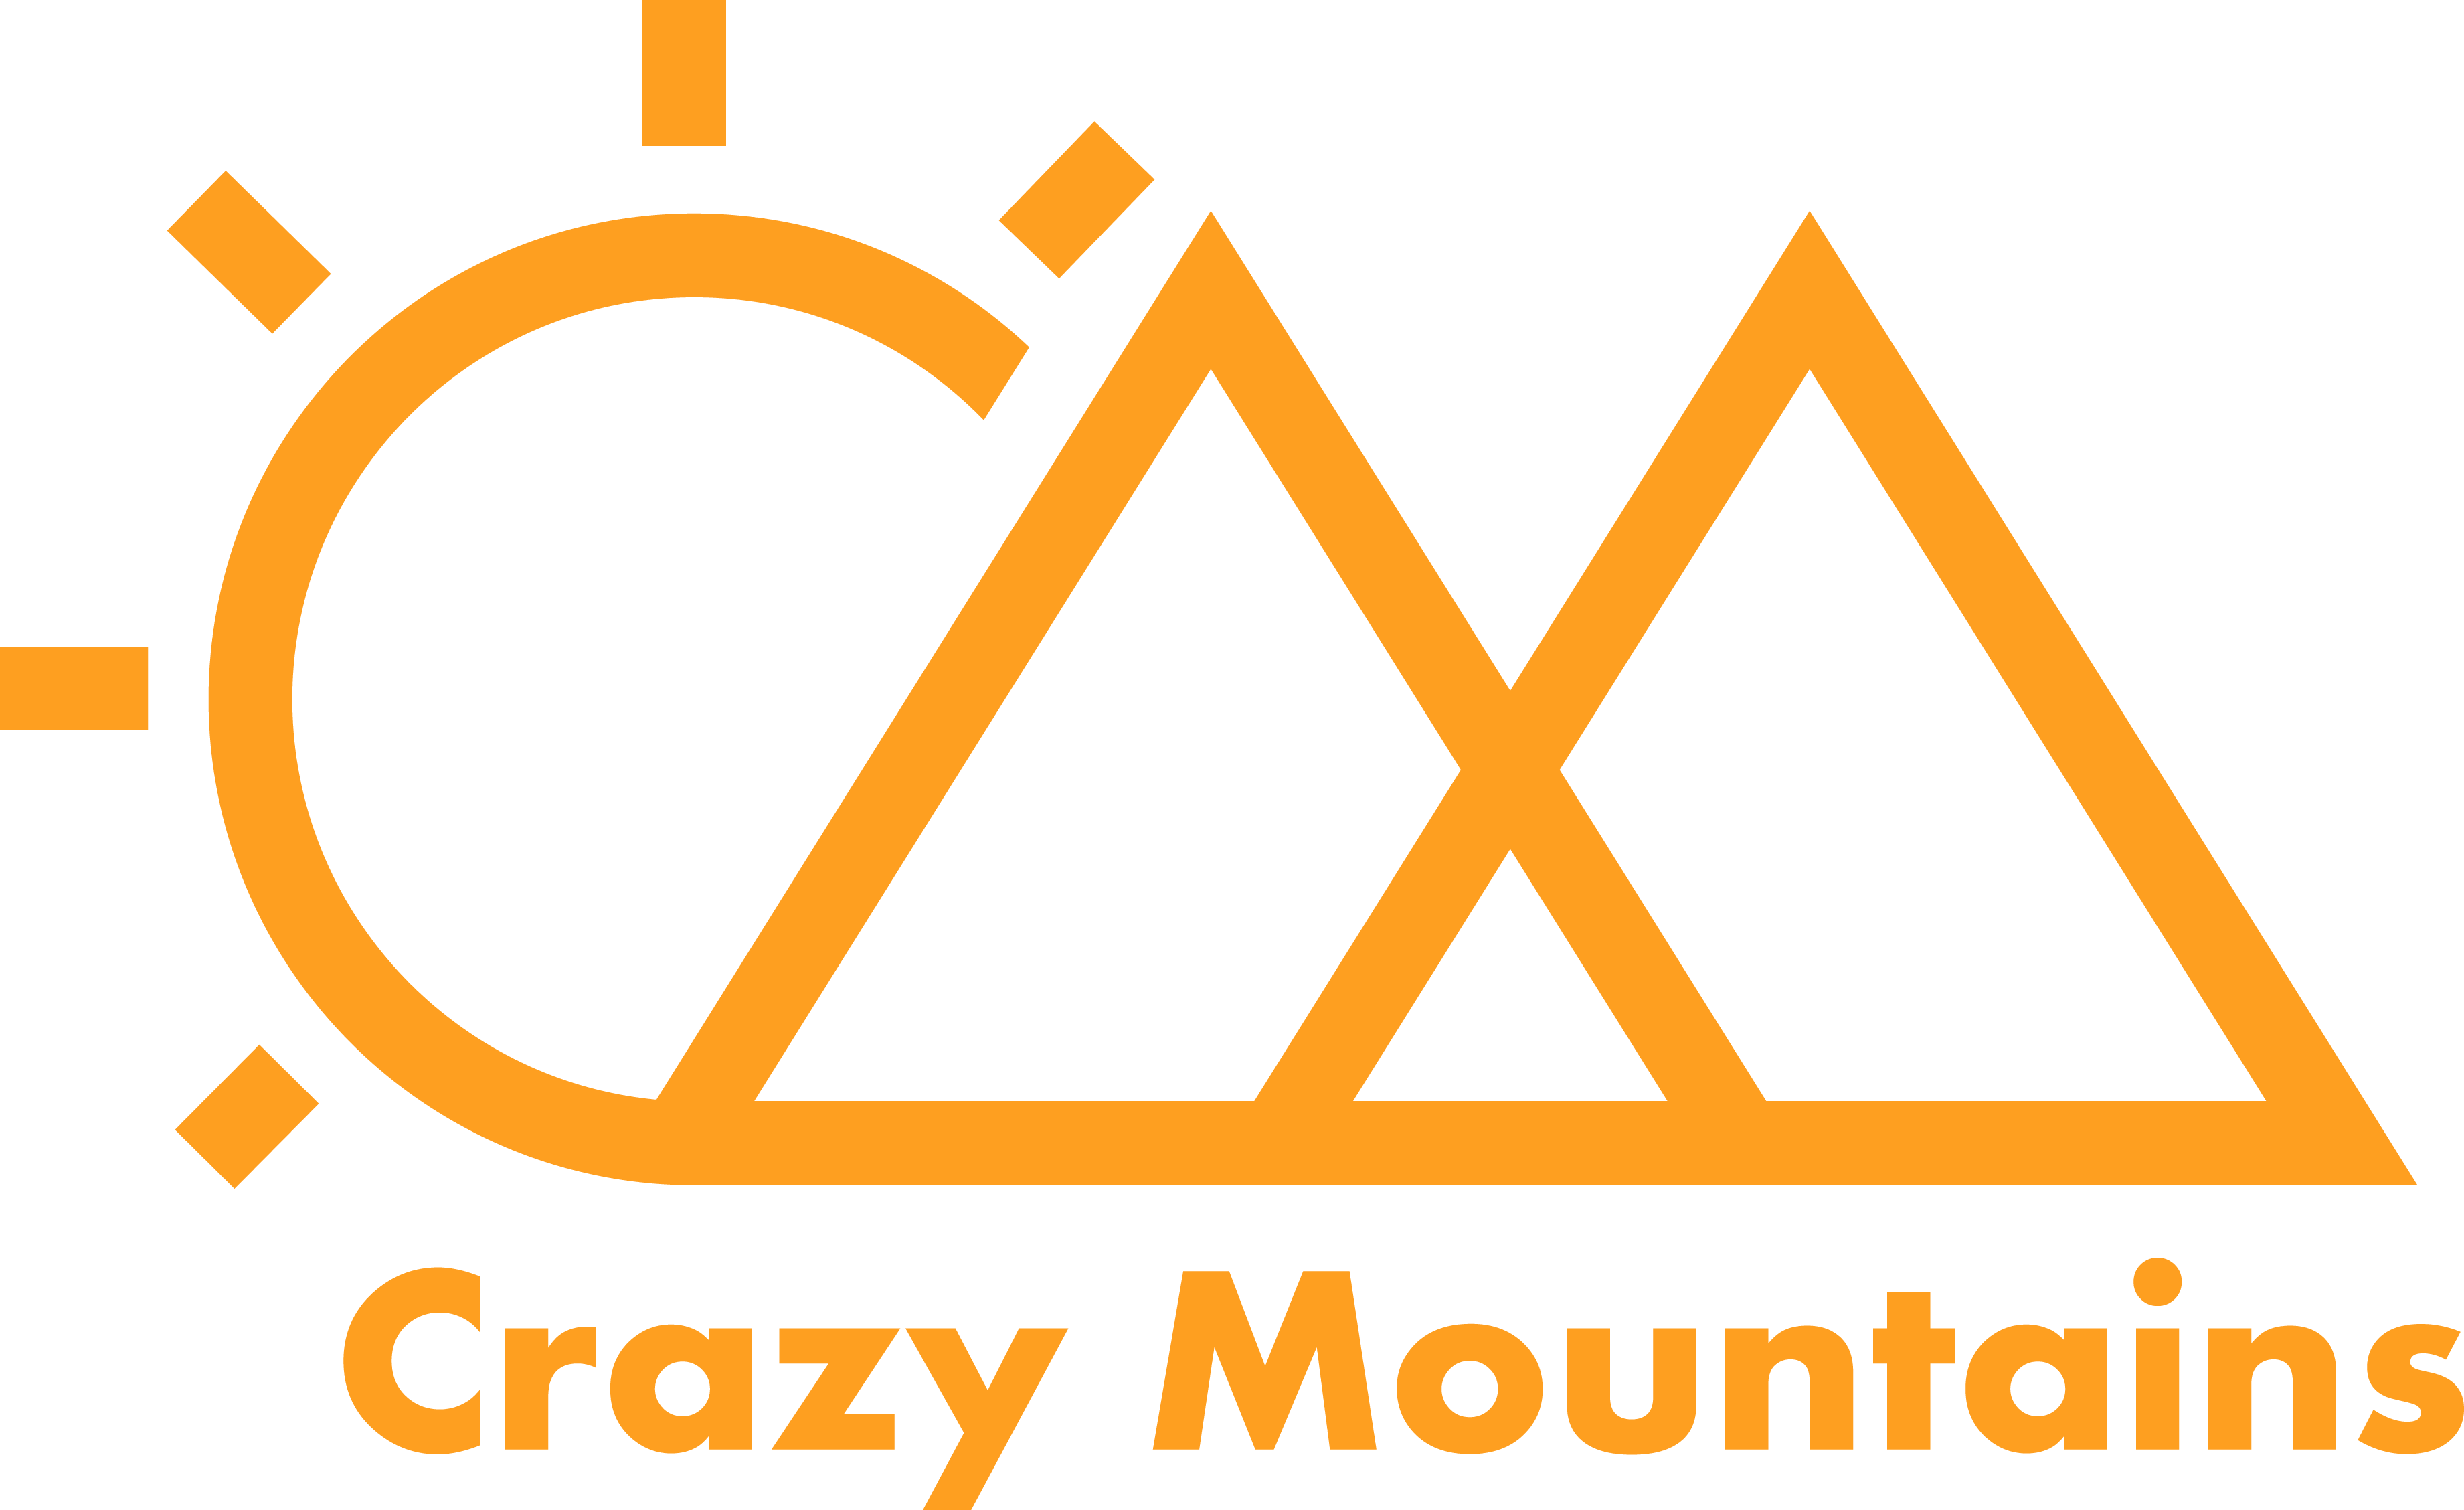 Crazy Mountains